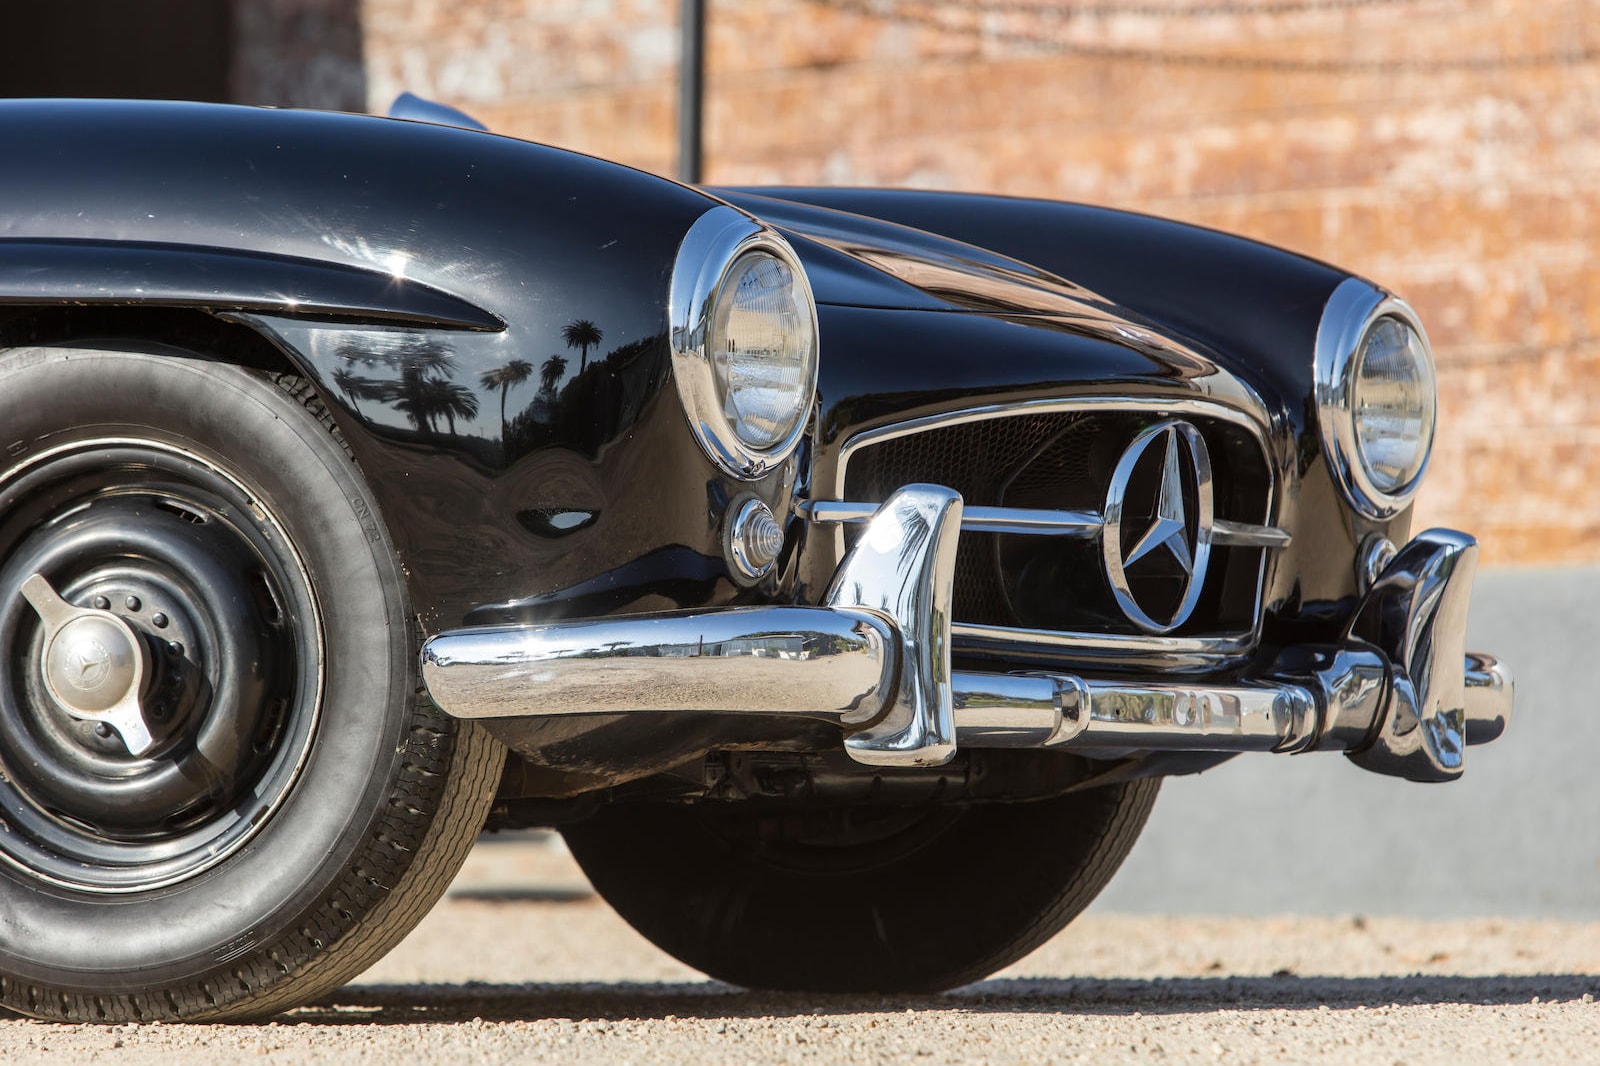 1955 年產 Mercedes-Benz 300SL Gullwing Coupe 將公開拍賣